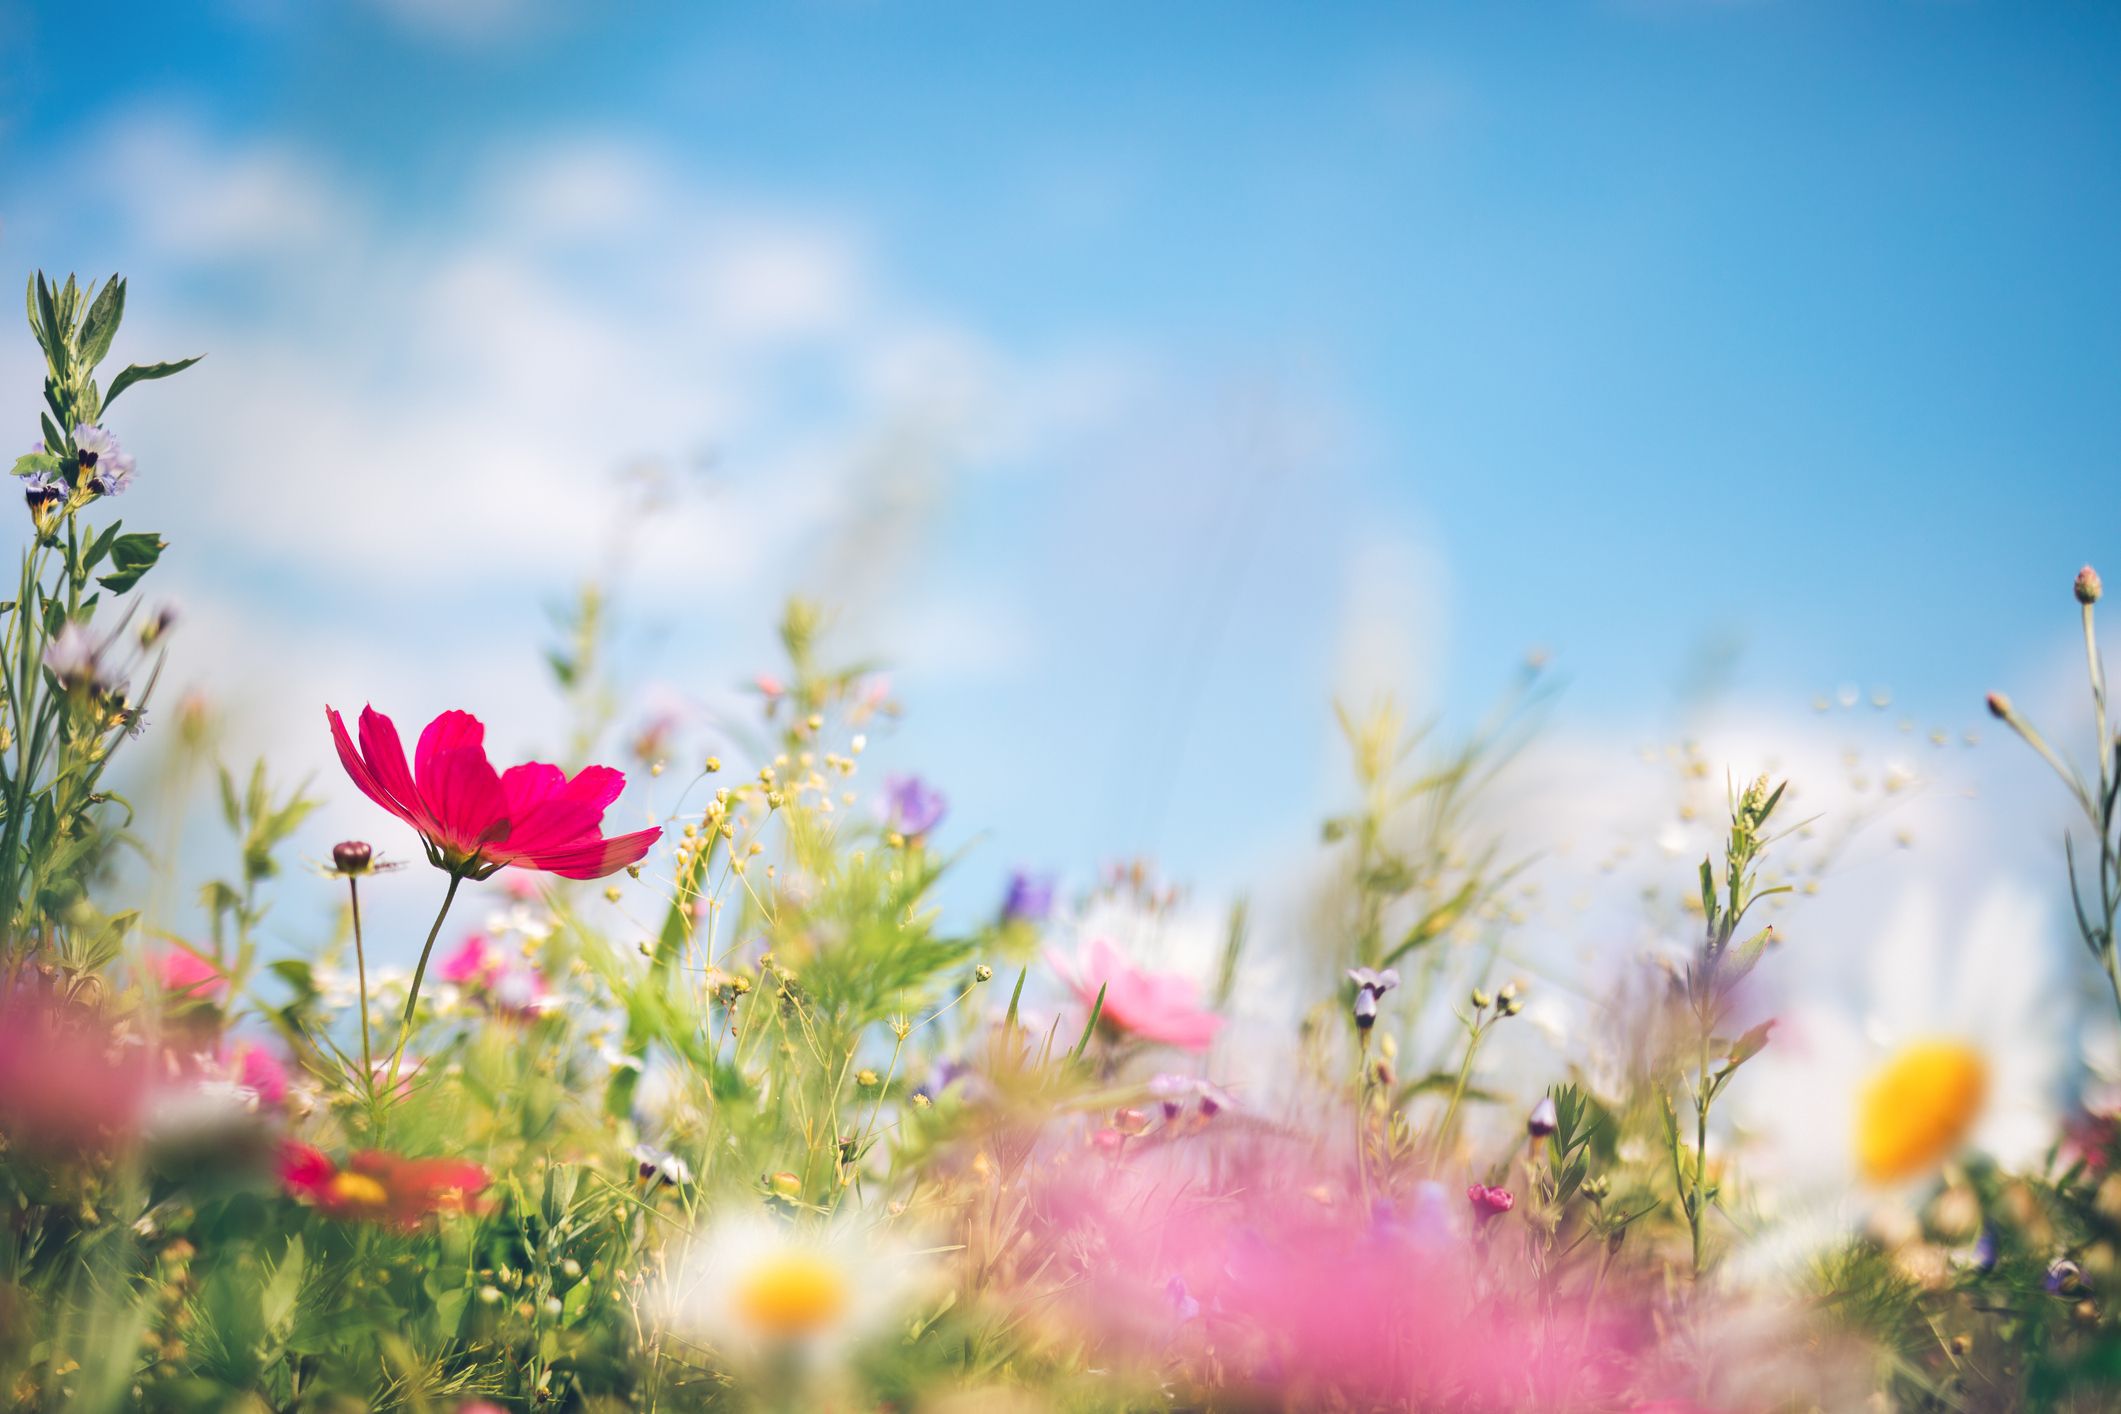 spring-meadow-royalty-free-image-1579125133.jpg